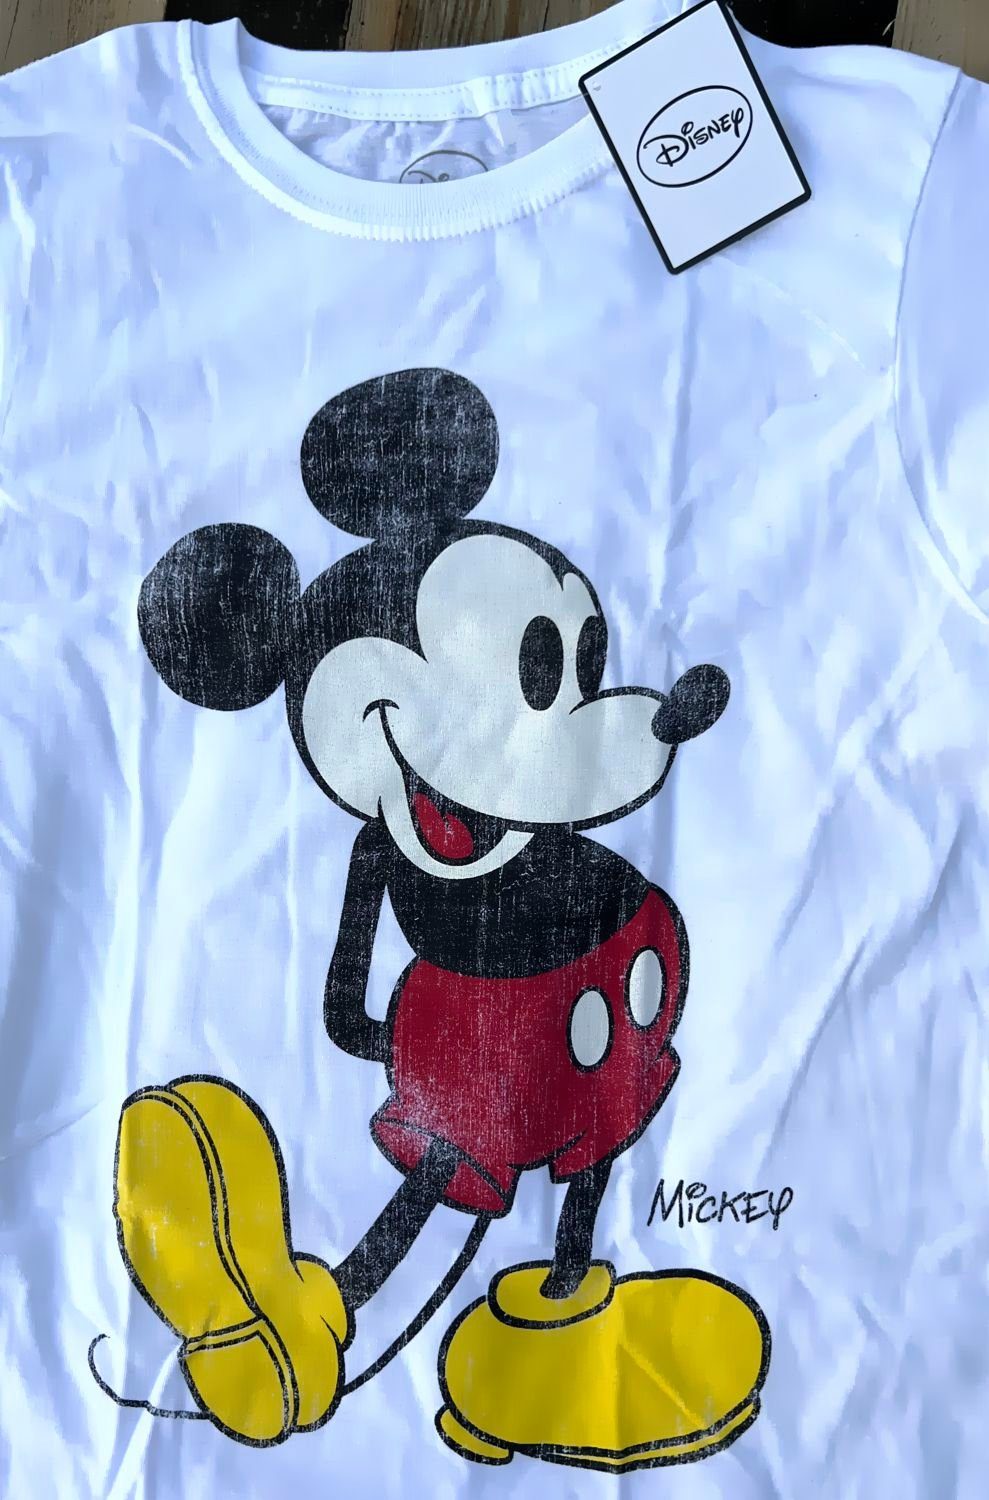 Disney Mickey Mouse hellgrau Print-Shirt weiß oder meliert M Damen T-Shirt Mickey L XL S